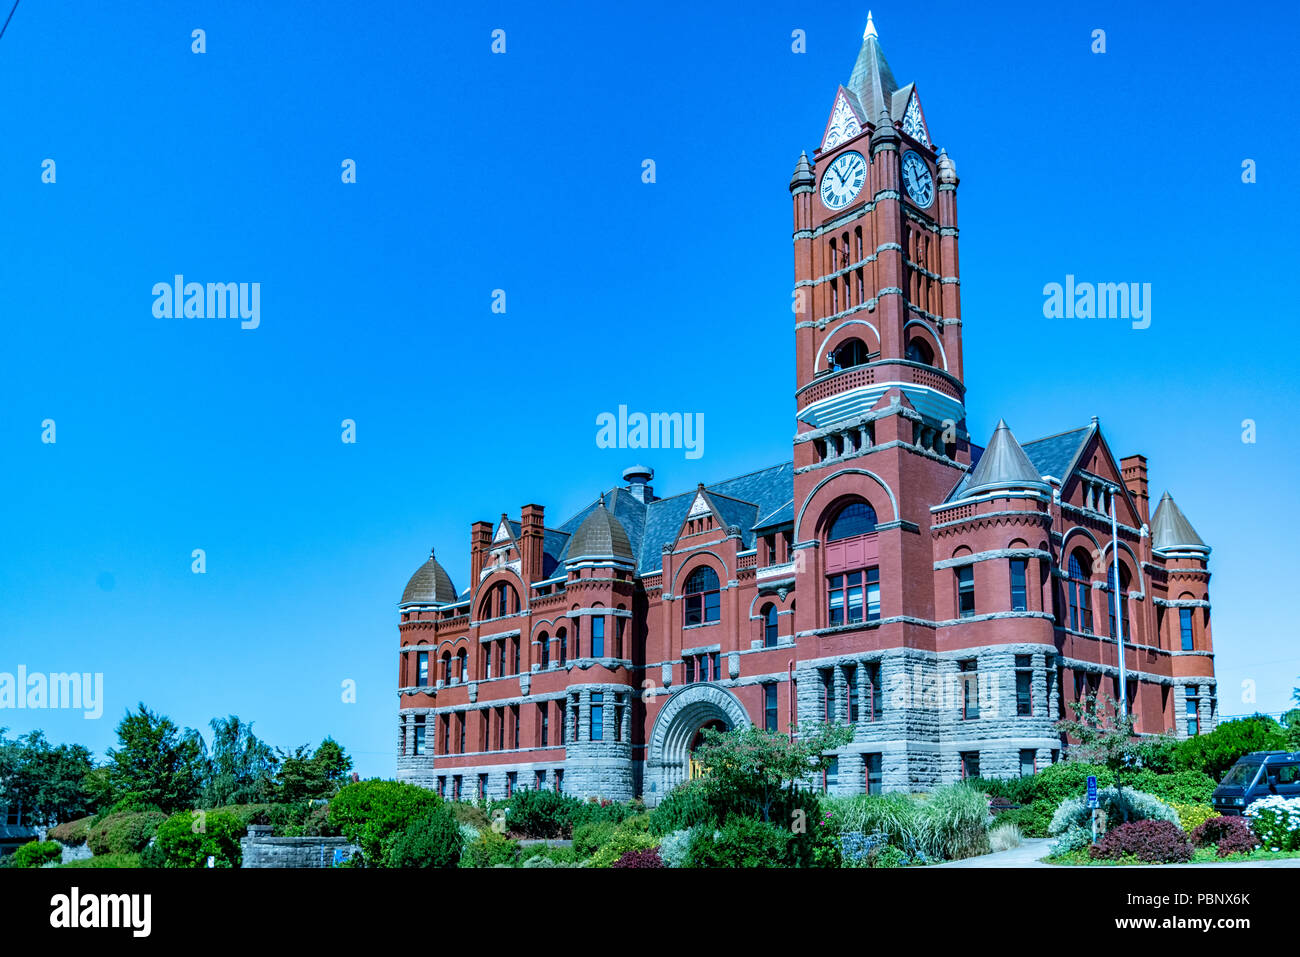 Jefferson County Courthouse 1. Costruito in mattoni rossi romanica in stile Revival nel 1892 dall'architetto W. A. Ritchie. Port Townsend, Washington, Stati Uniti d'America Foto Stock